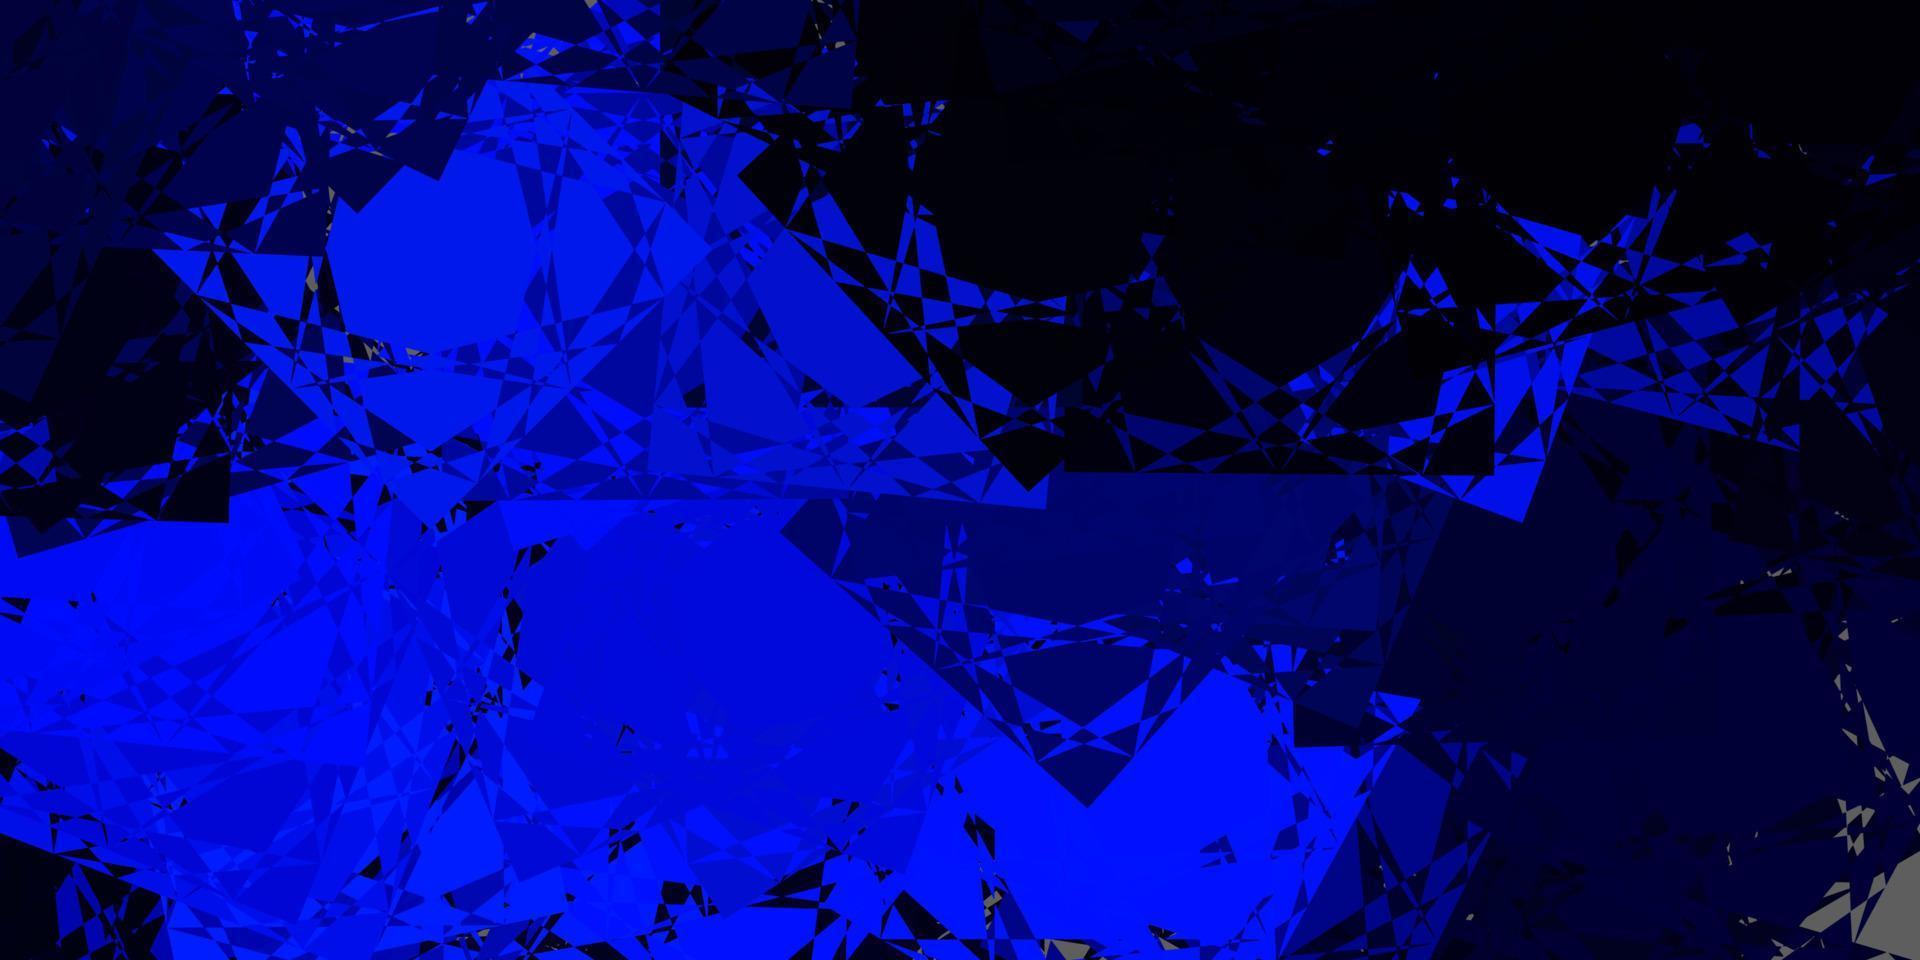 sfondo vettoriale blu scuro con triangoli.